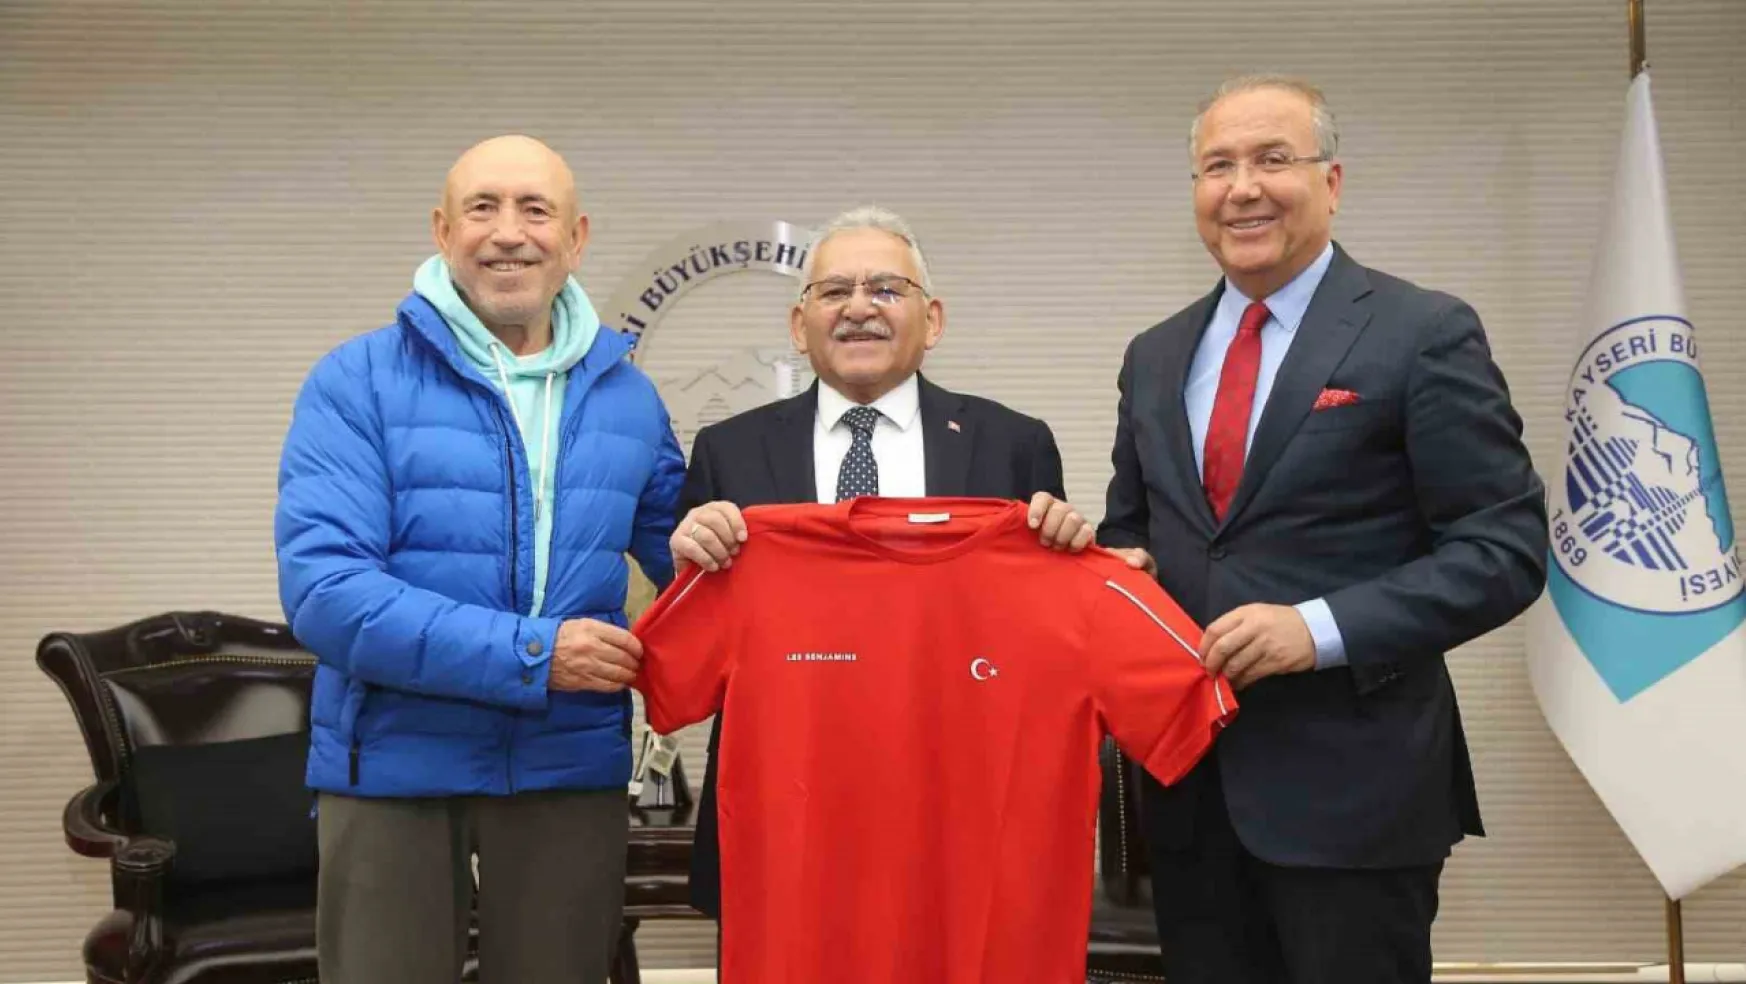 Başkan Büyükkılıç, Türkiye Tenis Federasyonu Başkanı Durmuş ile spor şehri Kayseri'ye yakışacak projeleri istişare etti